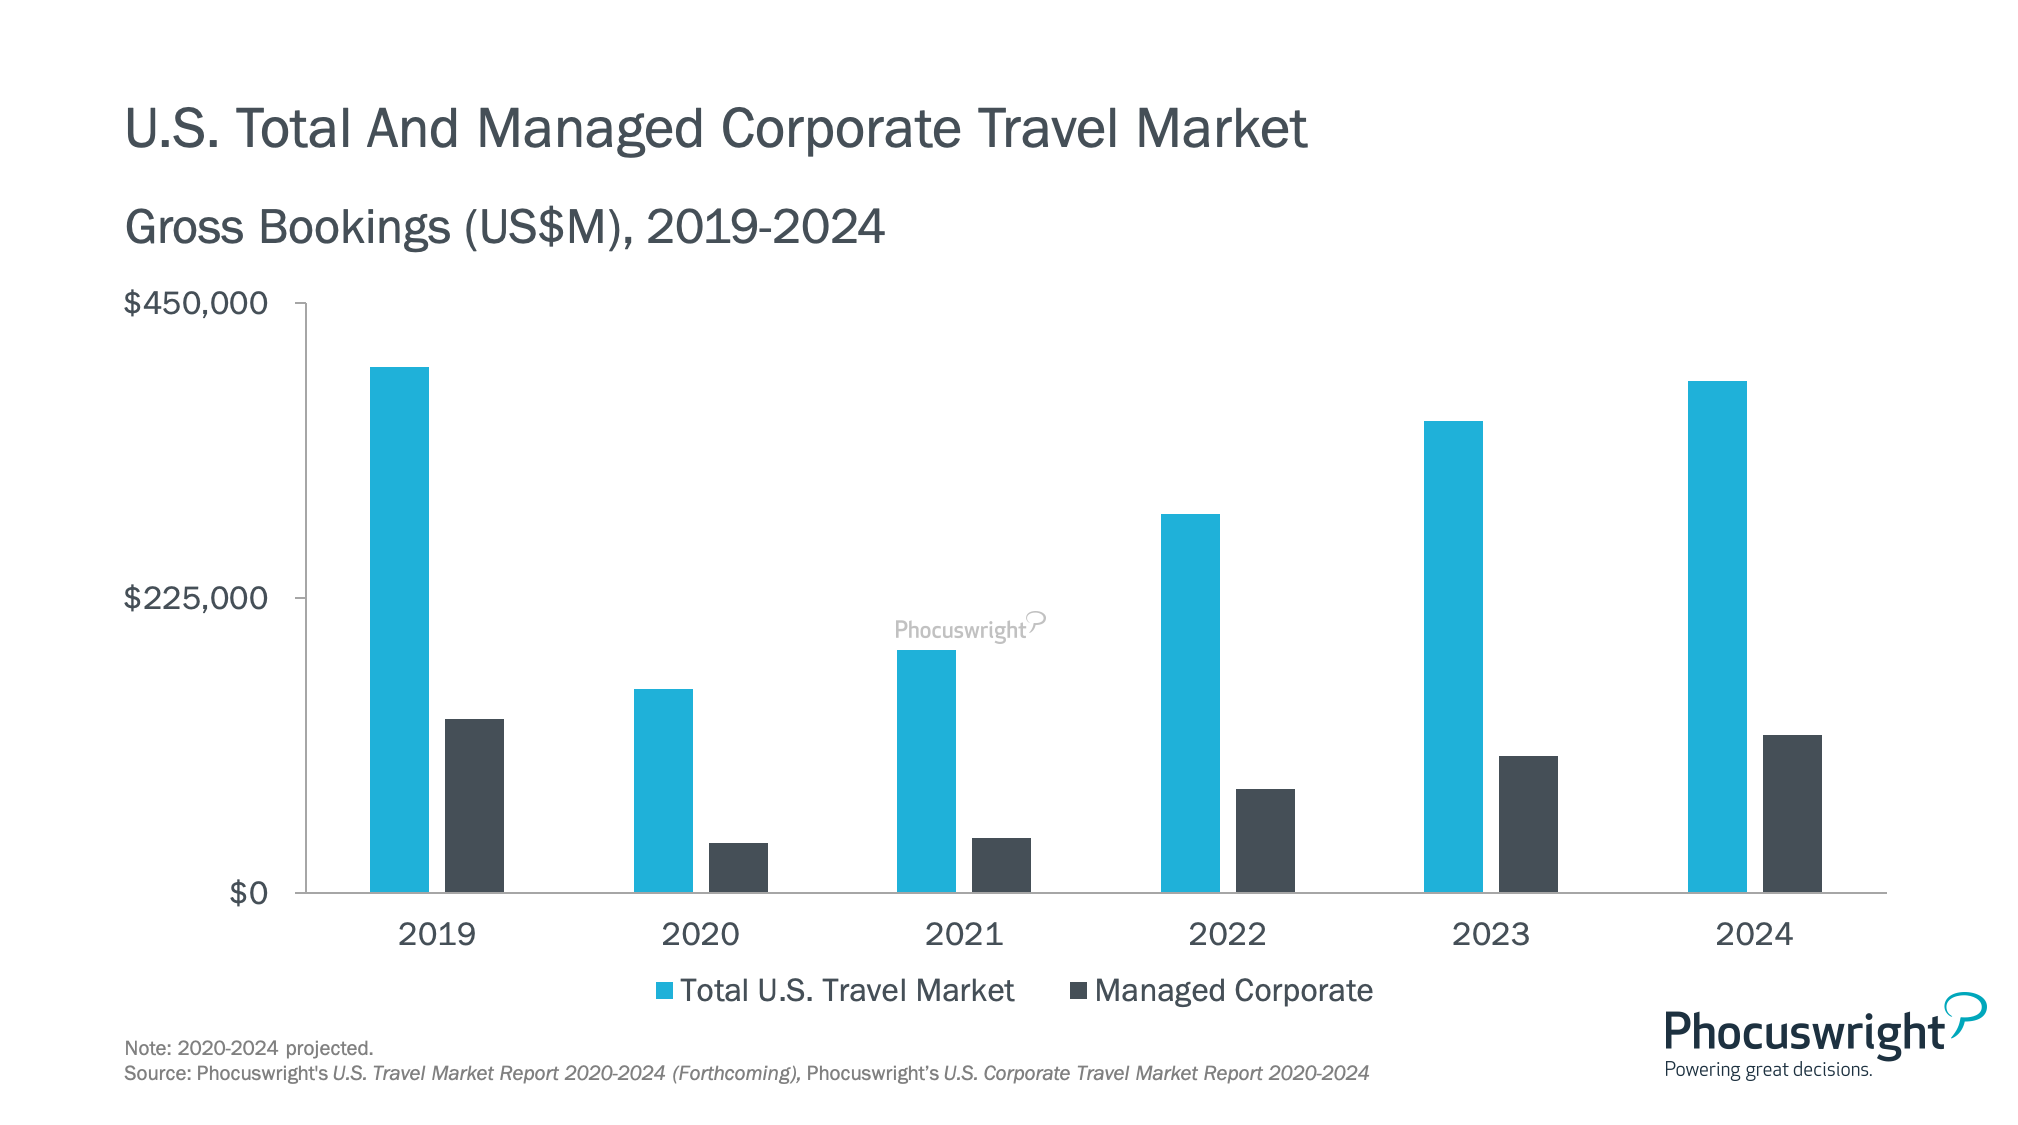 corporate travel index 2023